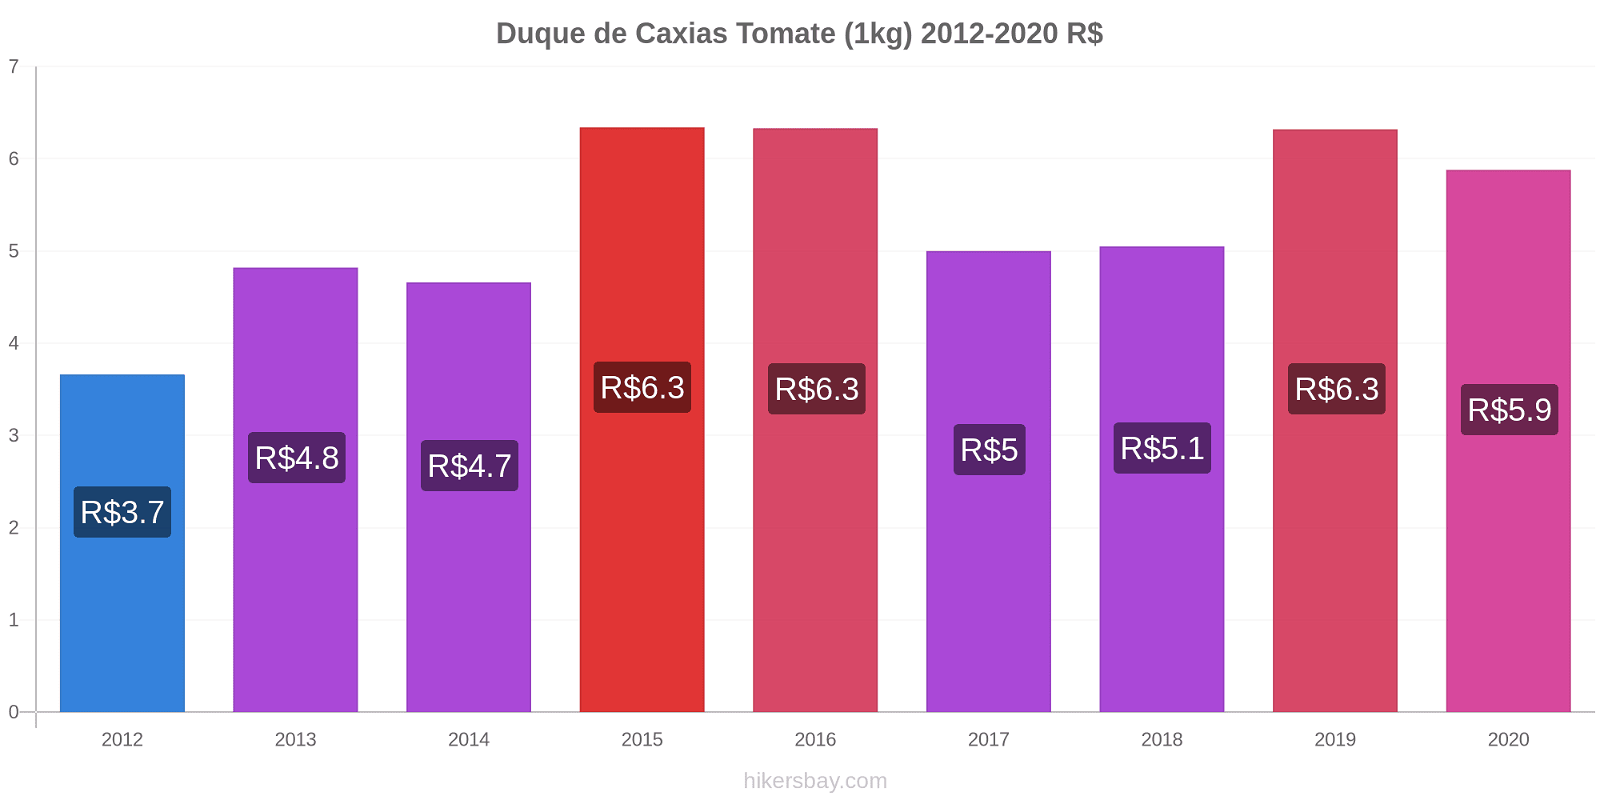 Duque de Caxias changements de prix Tomate (1kg) hikersbay.com